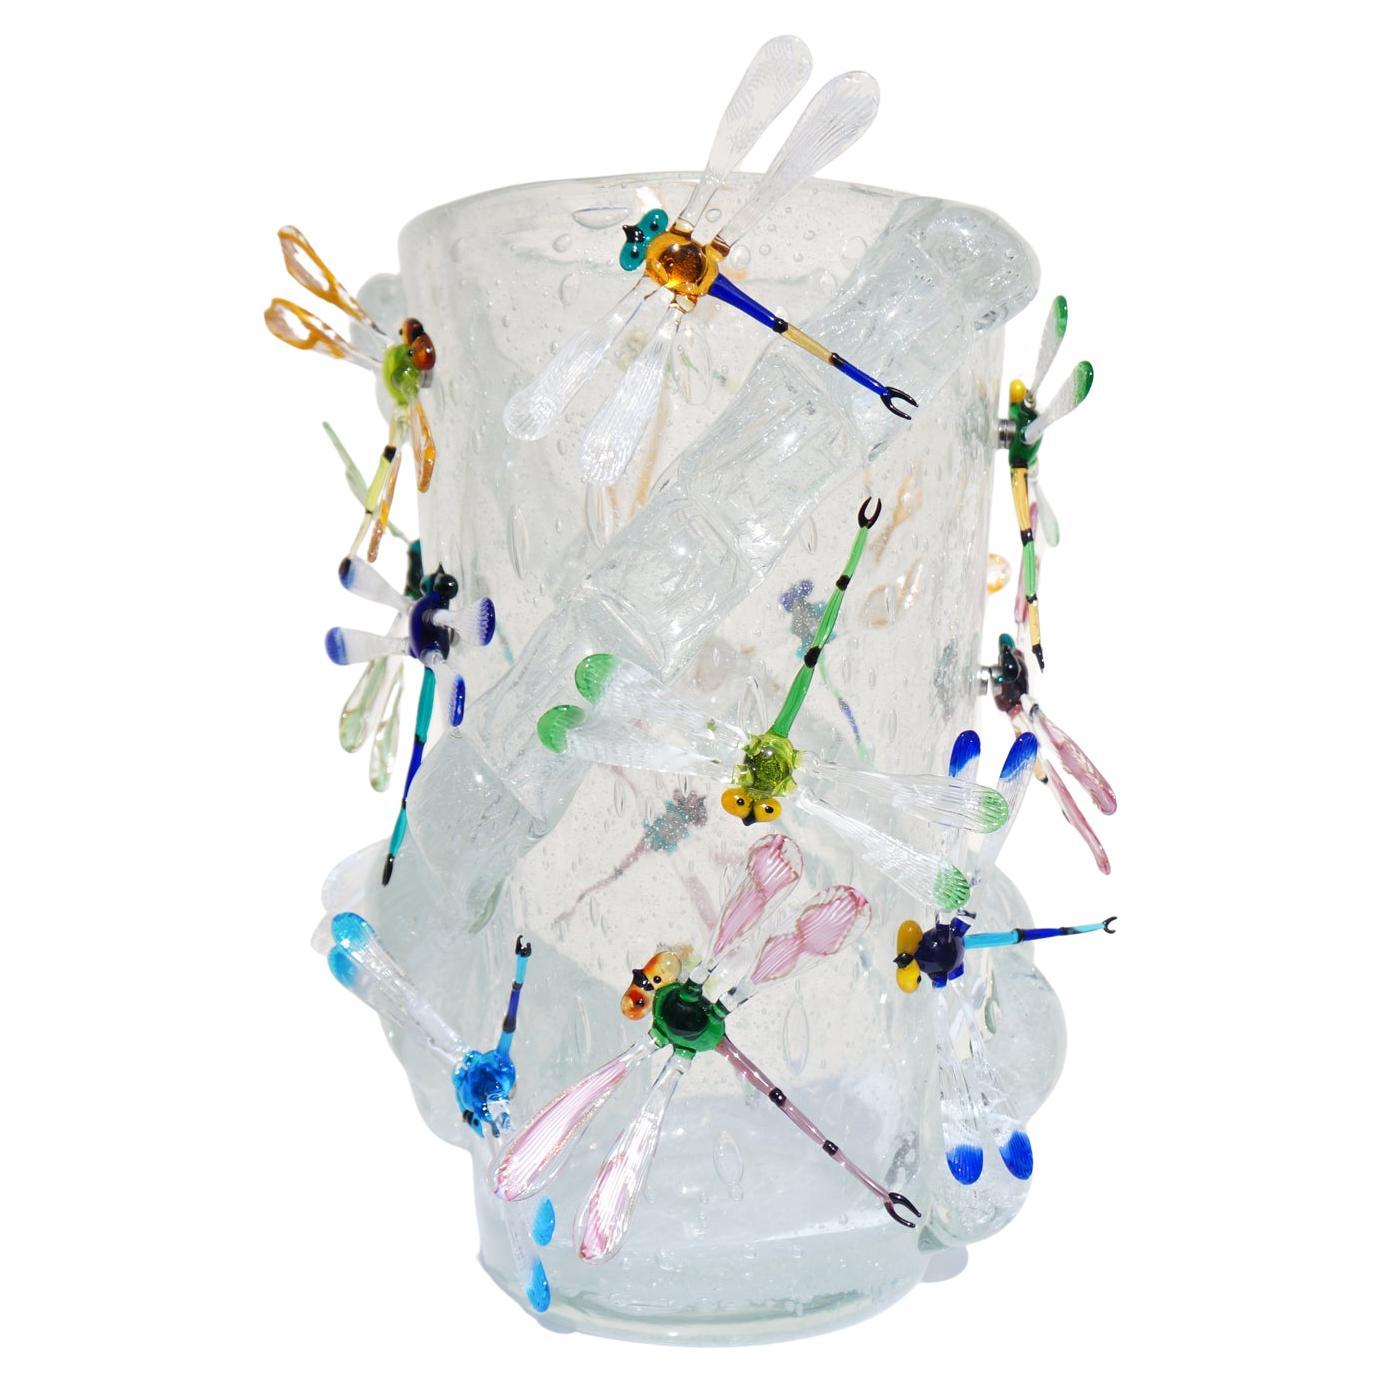 Handgefertigte Kristall Pulegoso Murano Glas geblasen Vase mit 16 bunten Libellen mit Magneten befestigt. 
Moderne Vase ideal für eine moderne und rustikale klassische Umgebung, für jedermann. Diese Arbeit wurde in Collaboration zwischen dem